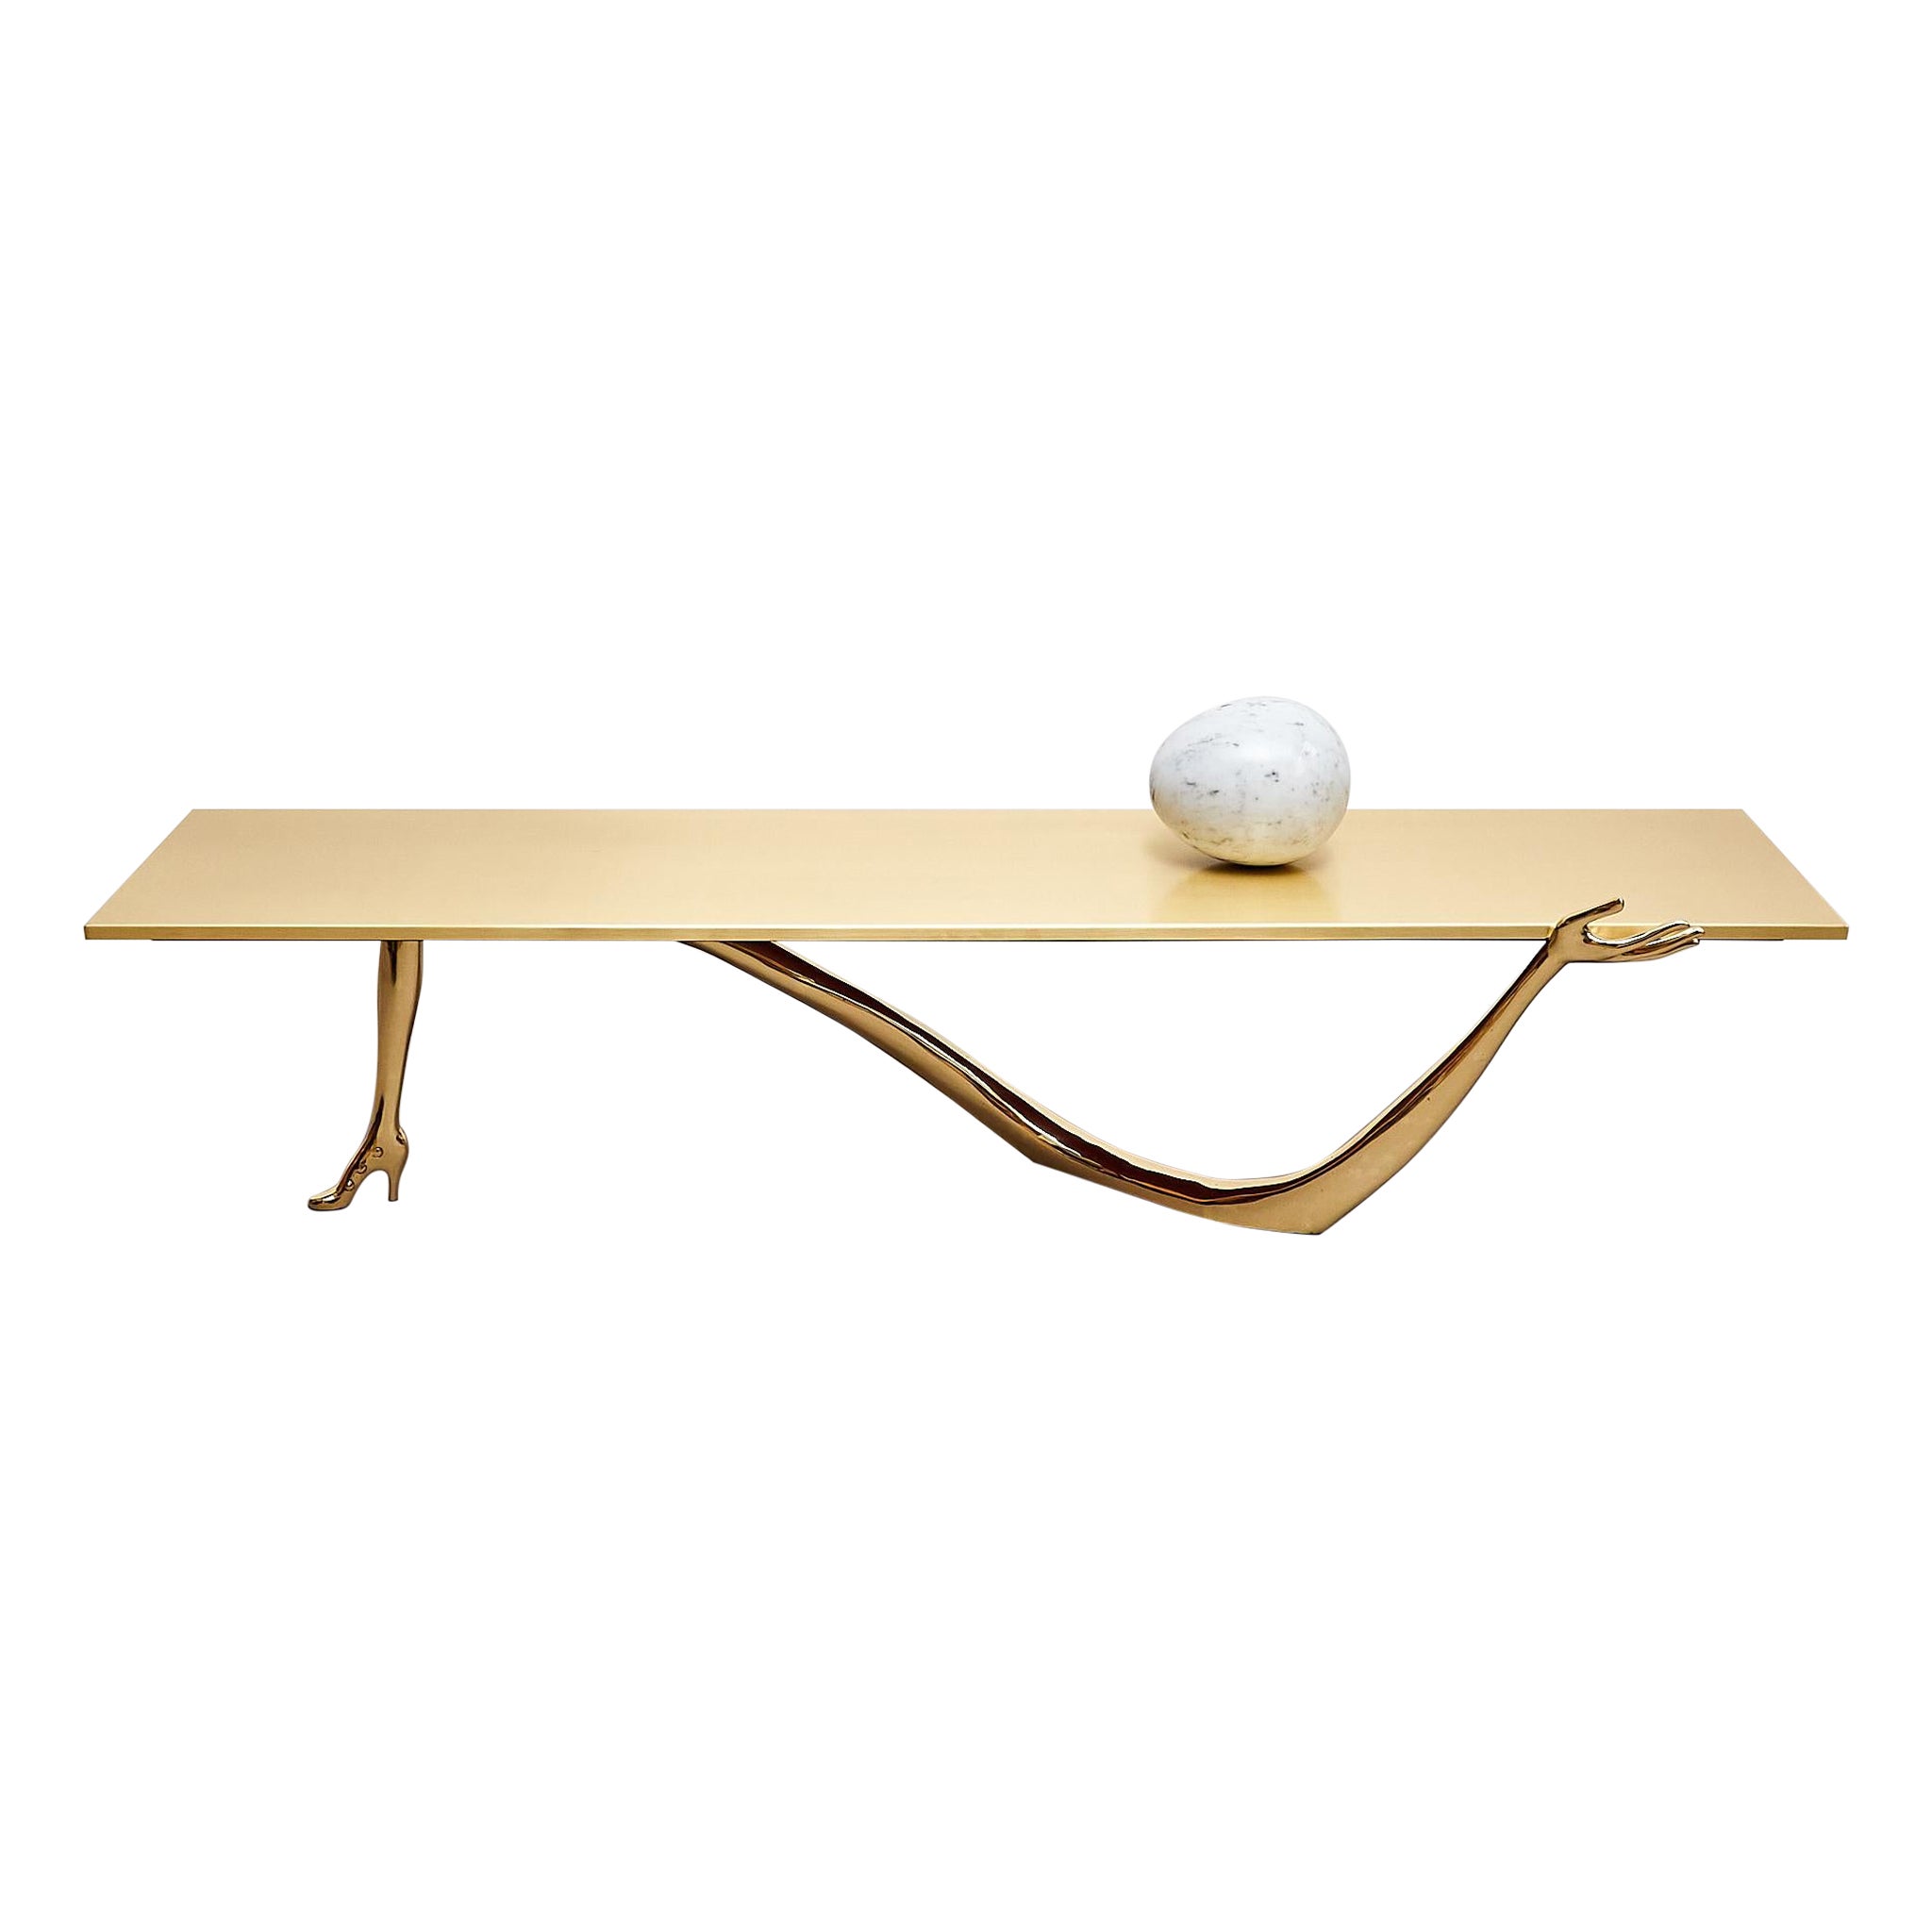 Wir stellen den faszinierenden Leda Low Table vor, eine atemberaubende Verkörperung von Kunst und Design, die Funktionalität und Eleganz nahtlos miteinander verbindet. Dieses exquisite, mit unvergleichlicher Liebe zum Detail gefertigte Stück zeugt